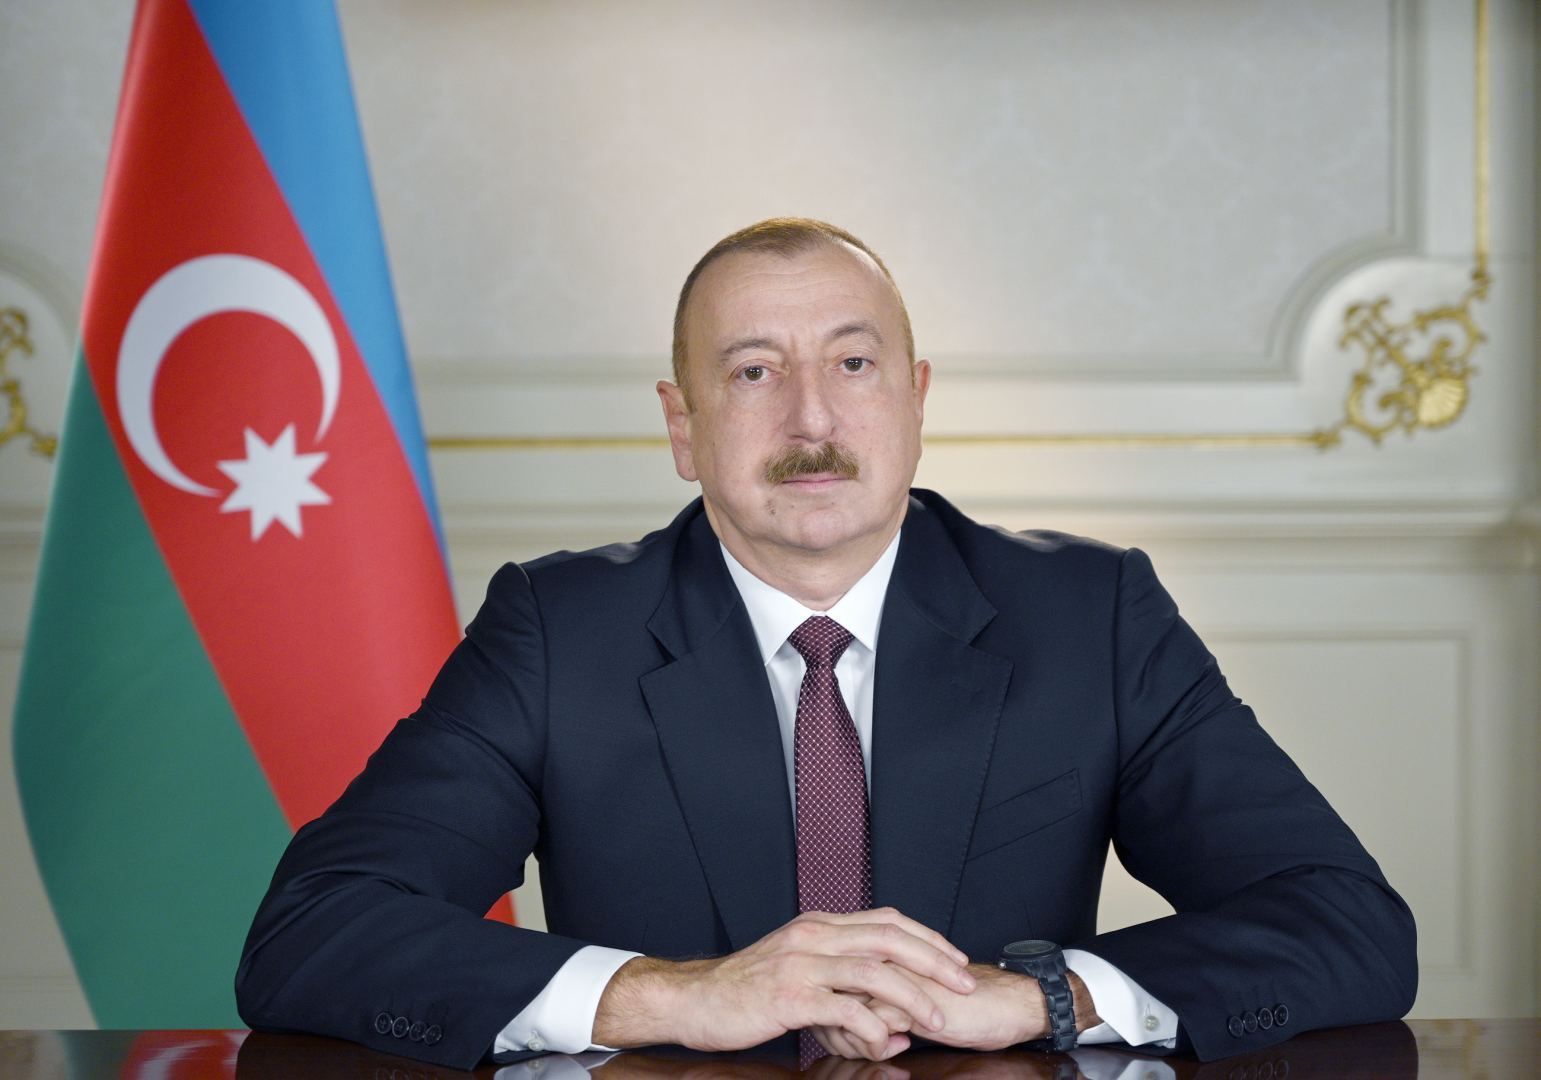 Prezident Azerbajdžanu poslal prezidentovi Slovenska blahoprajný list